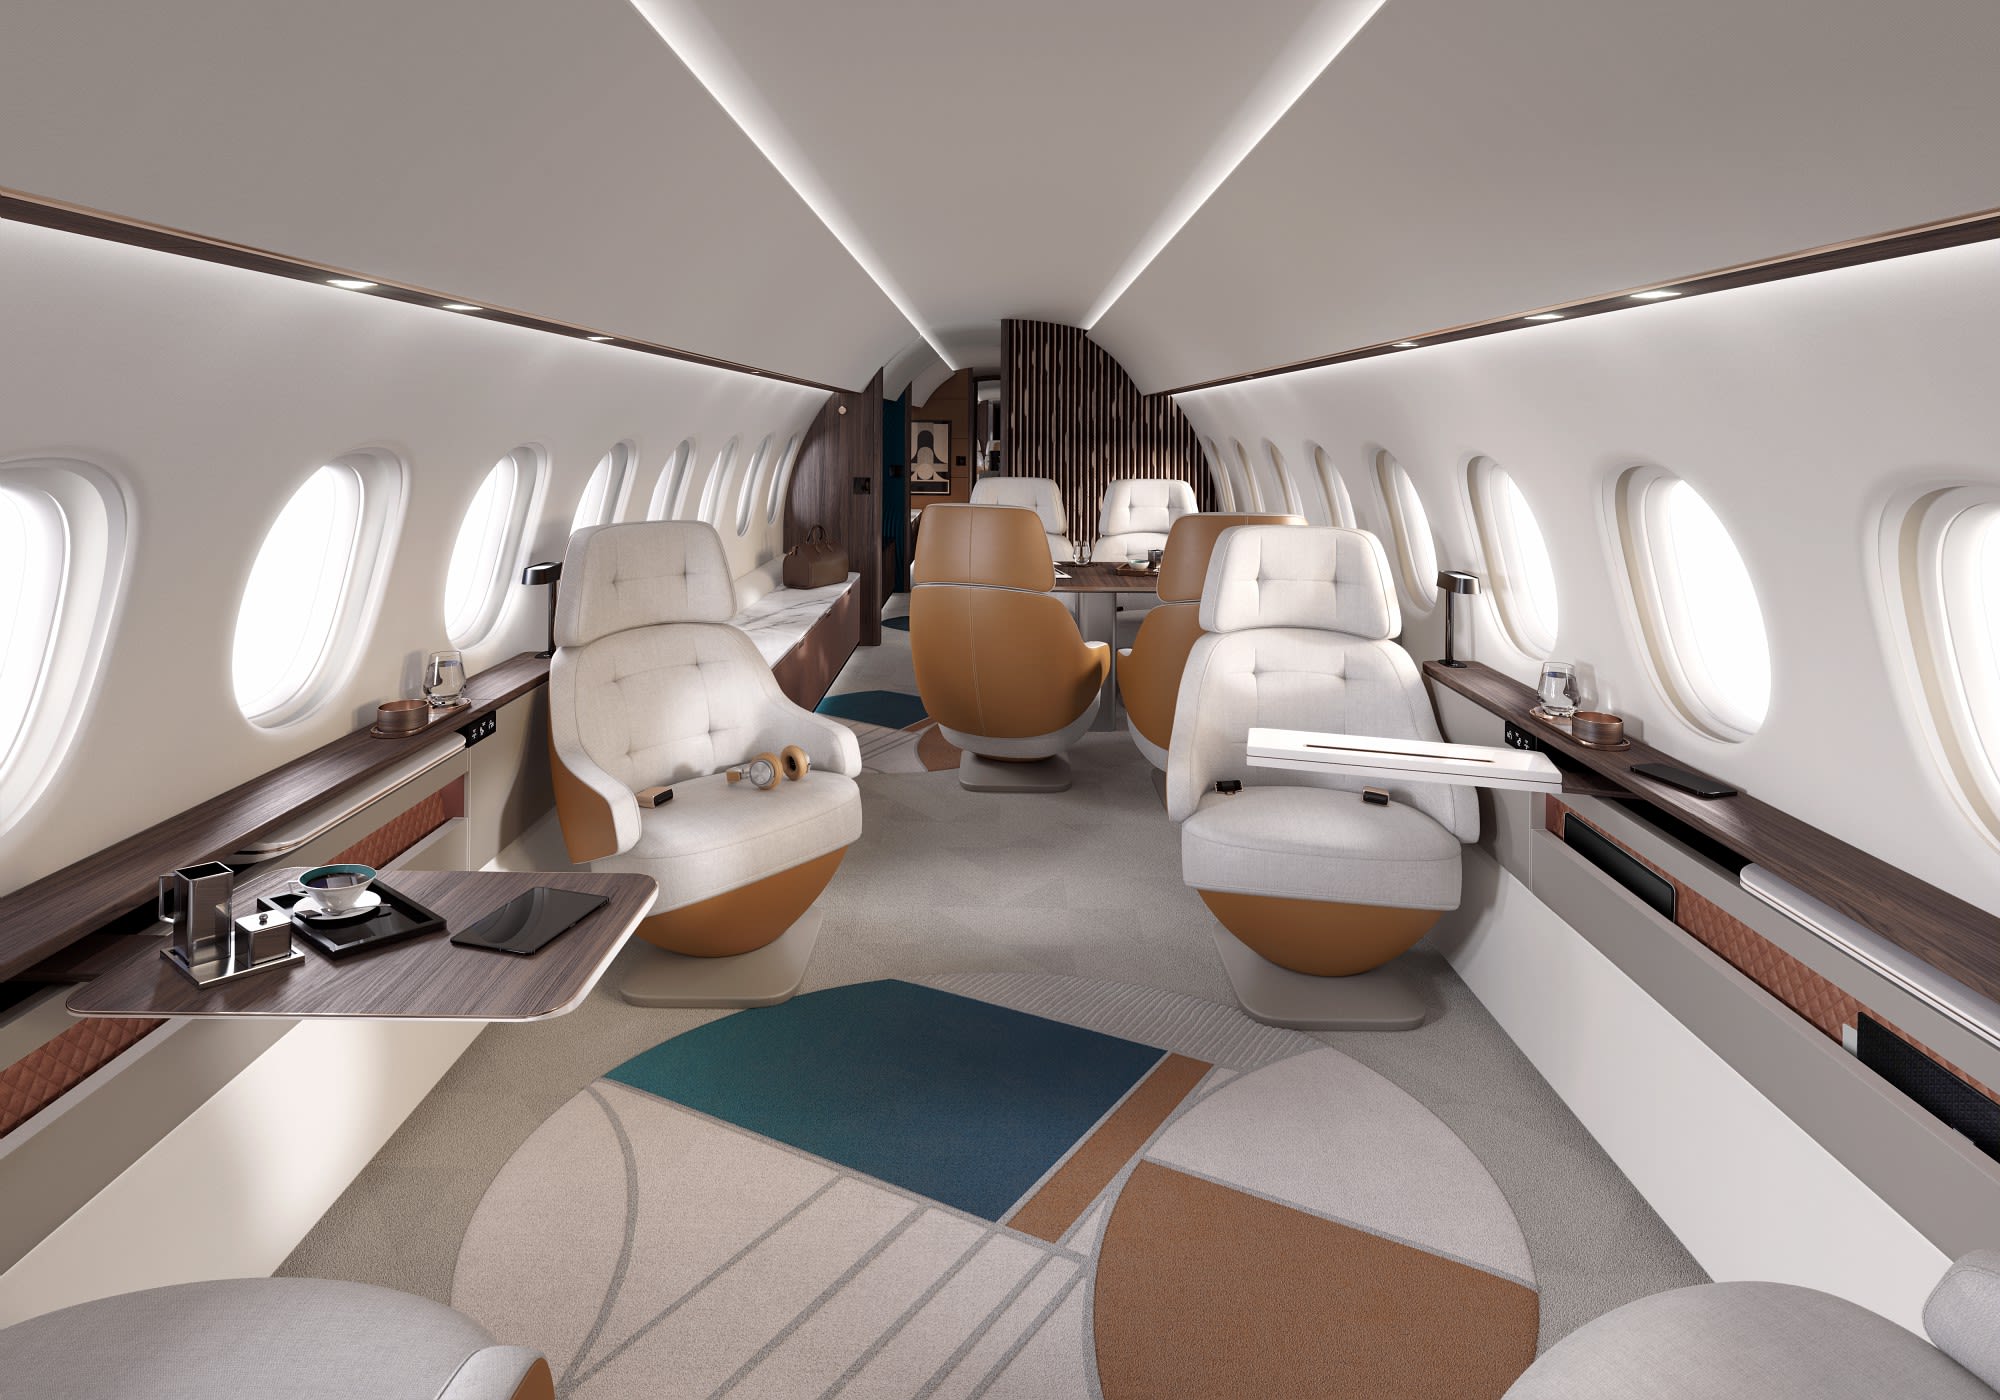 Falcon 10X cabin